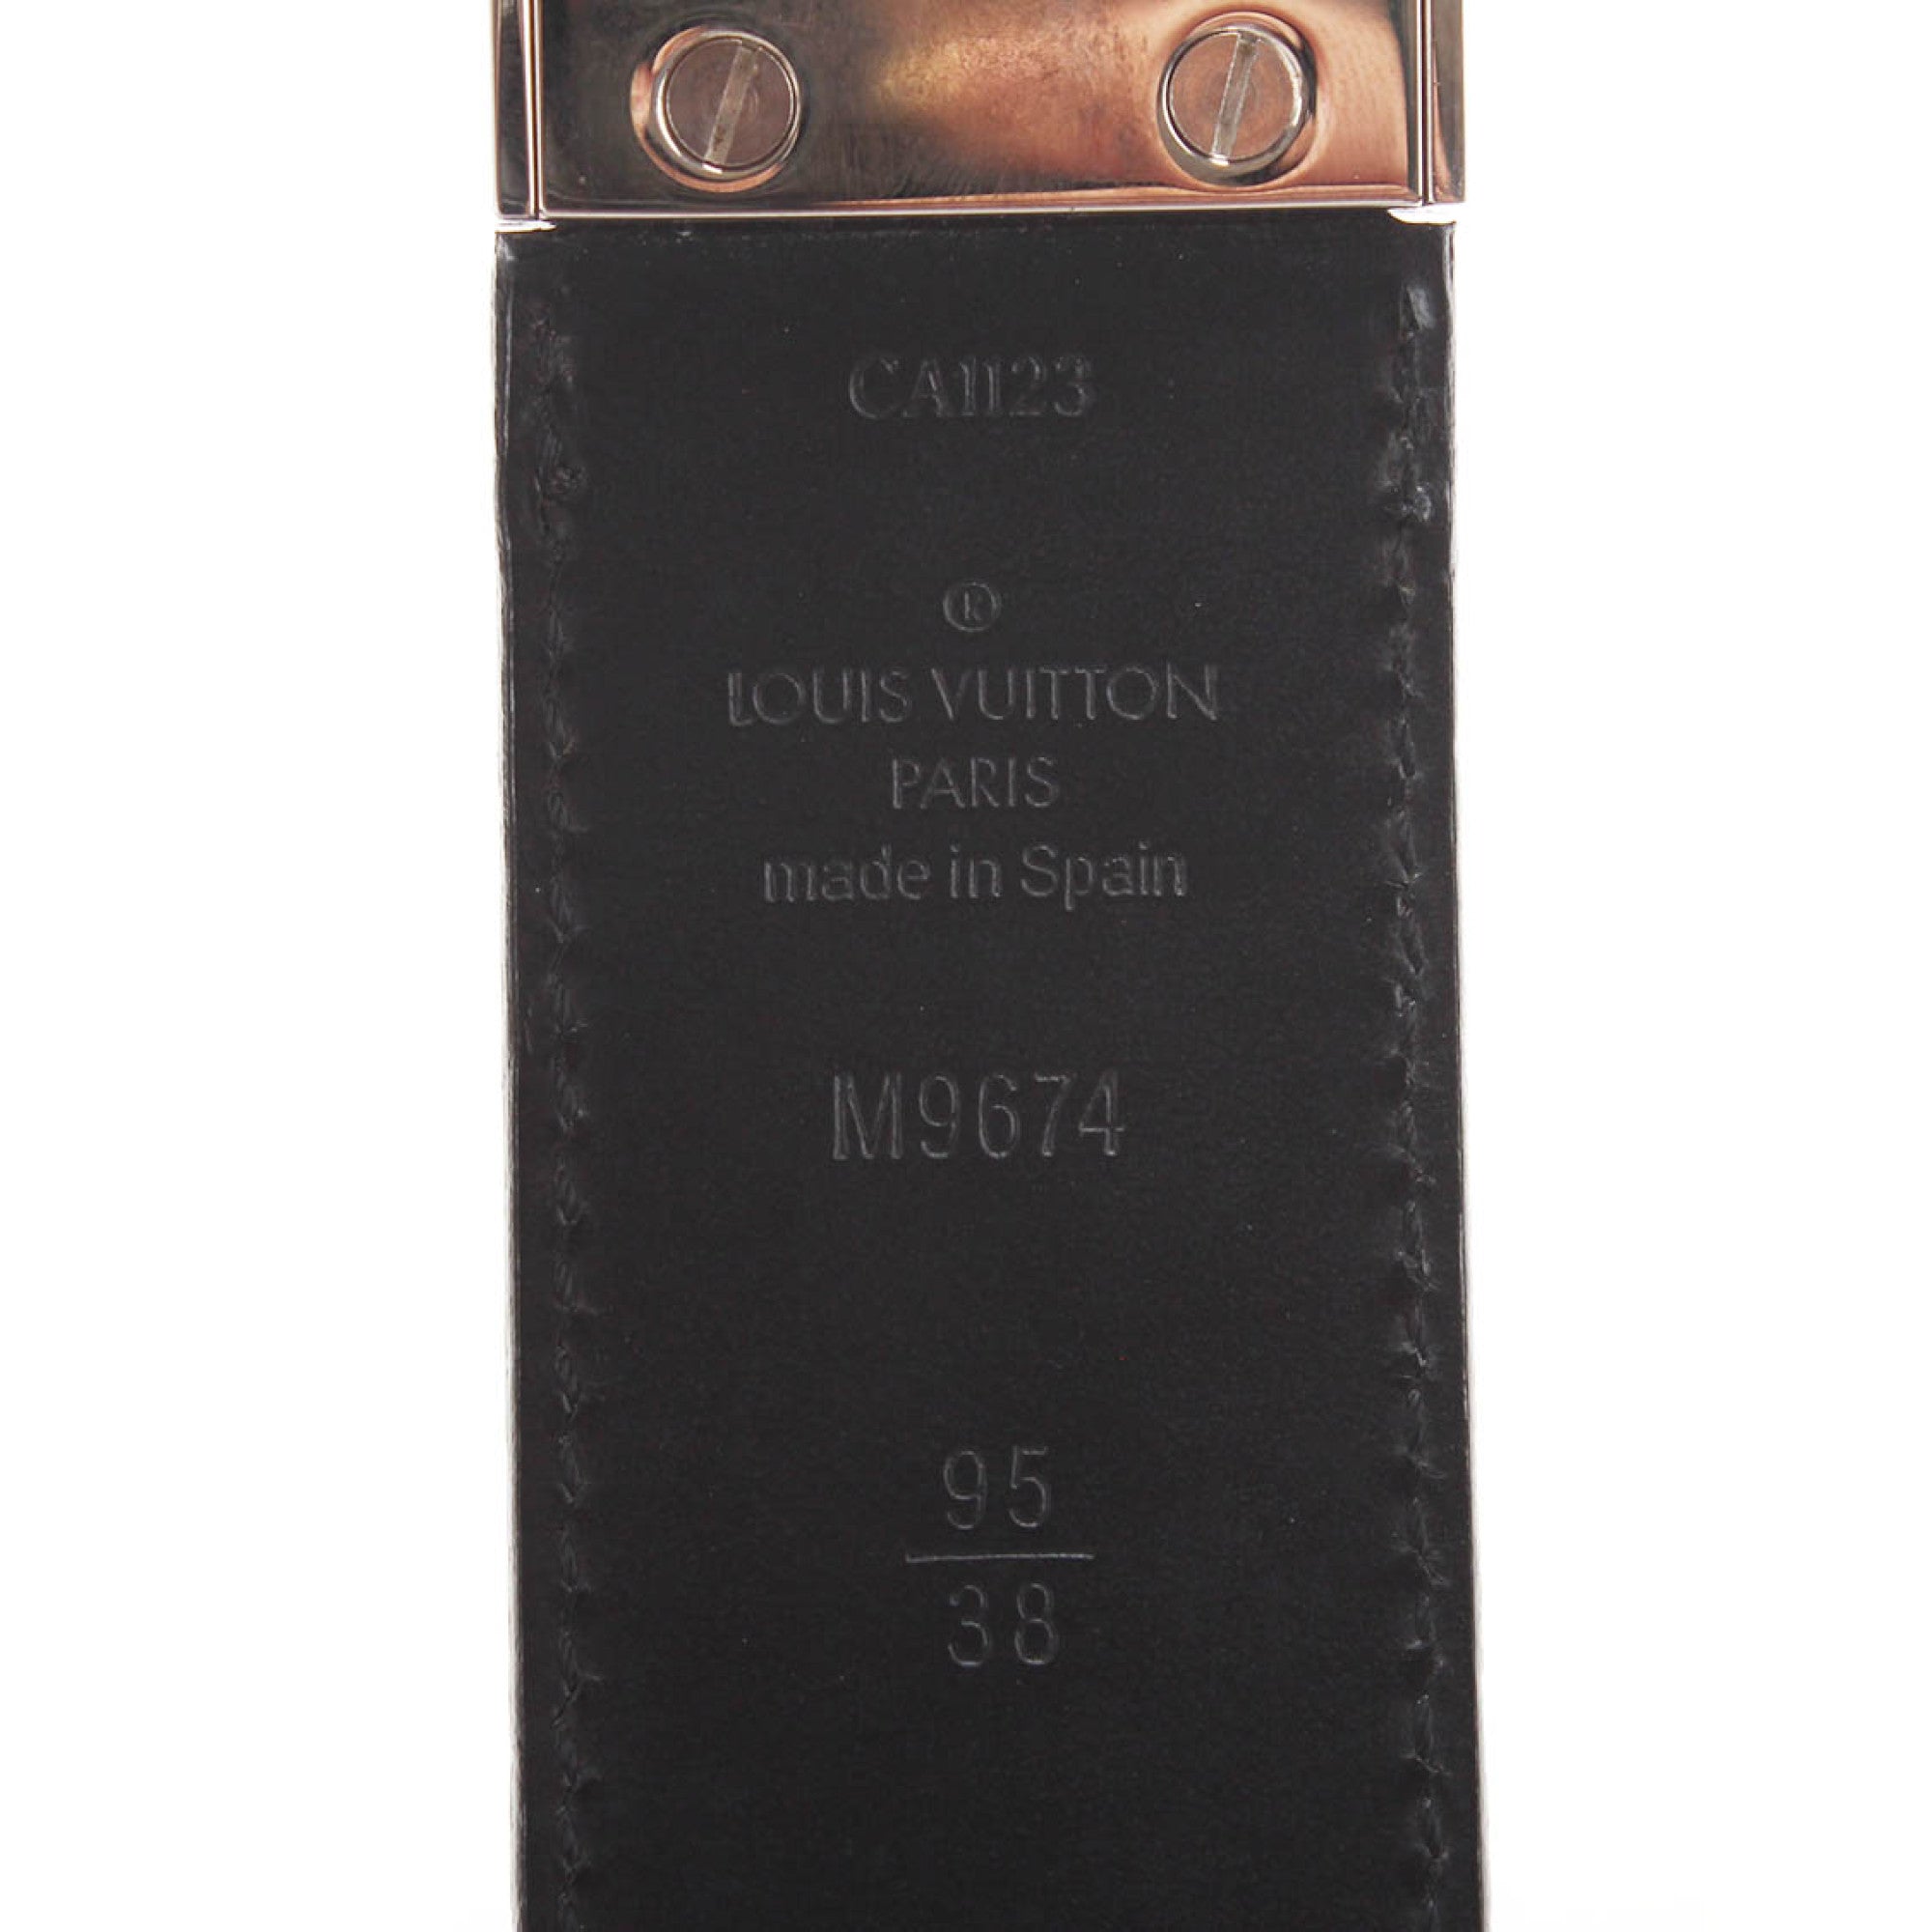 Louis Vuitton 2013 pre-owned Indini Detroit belt